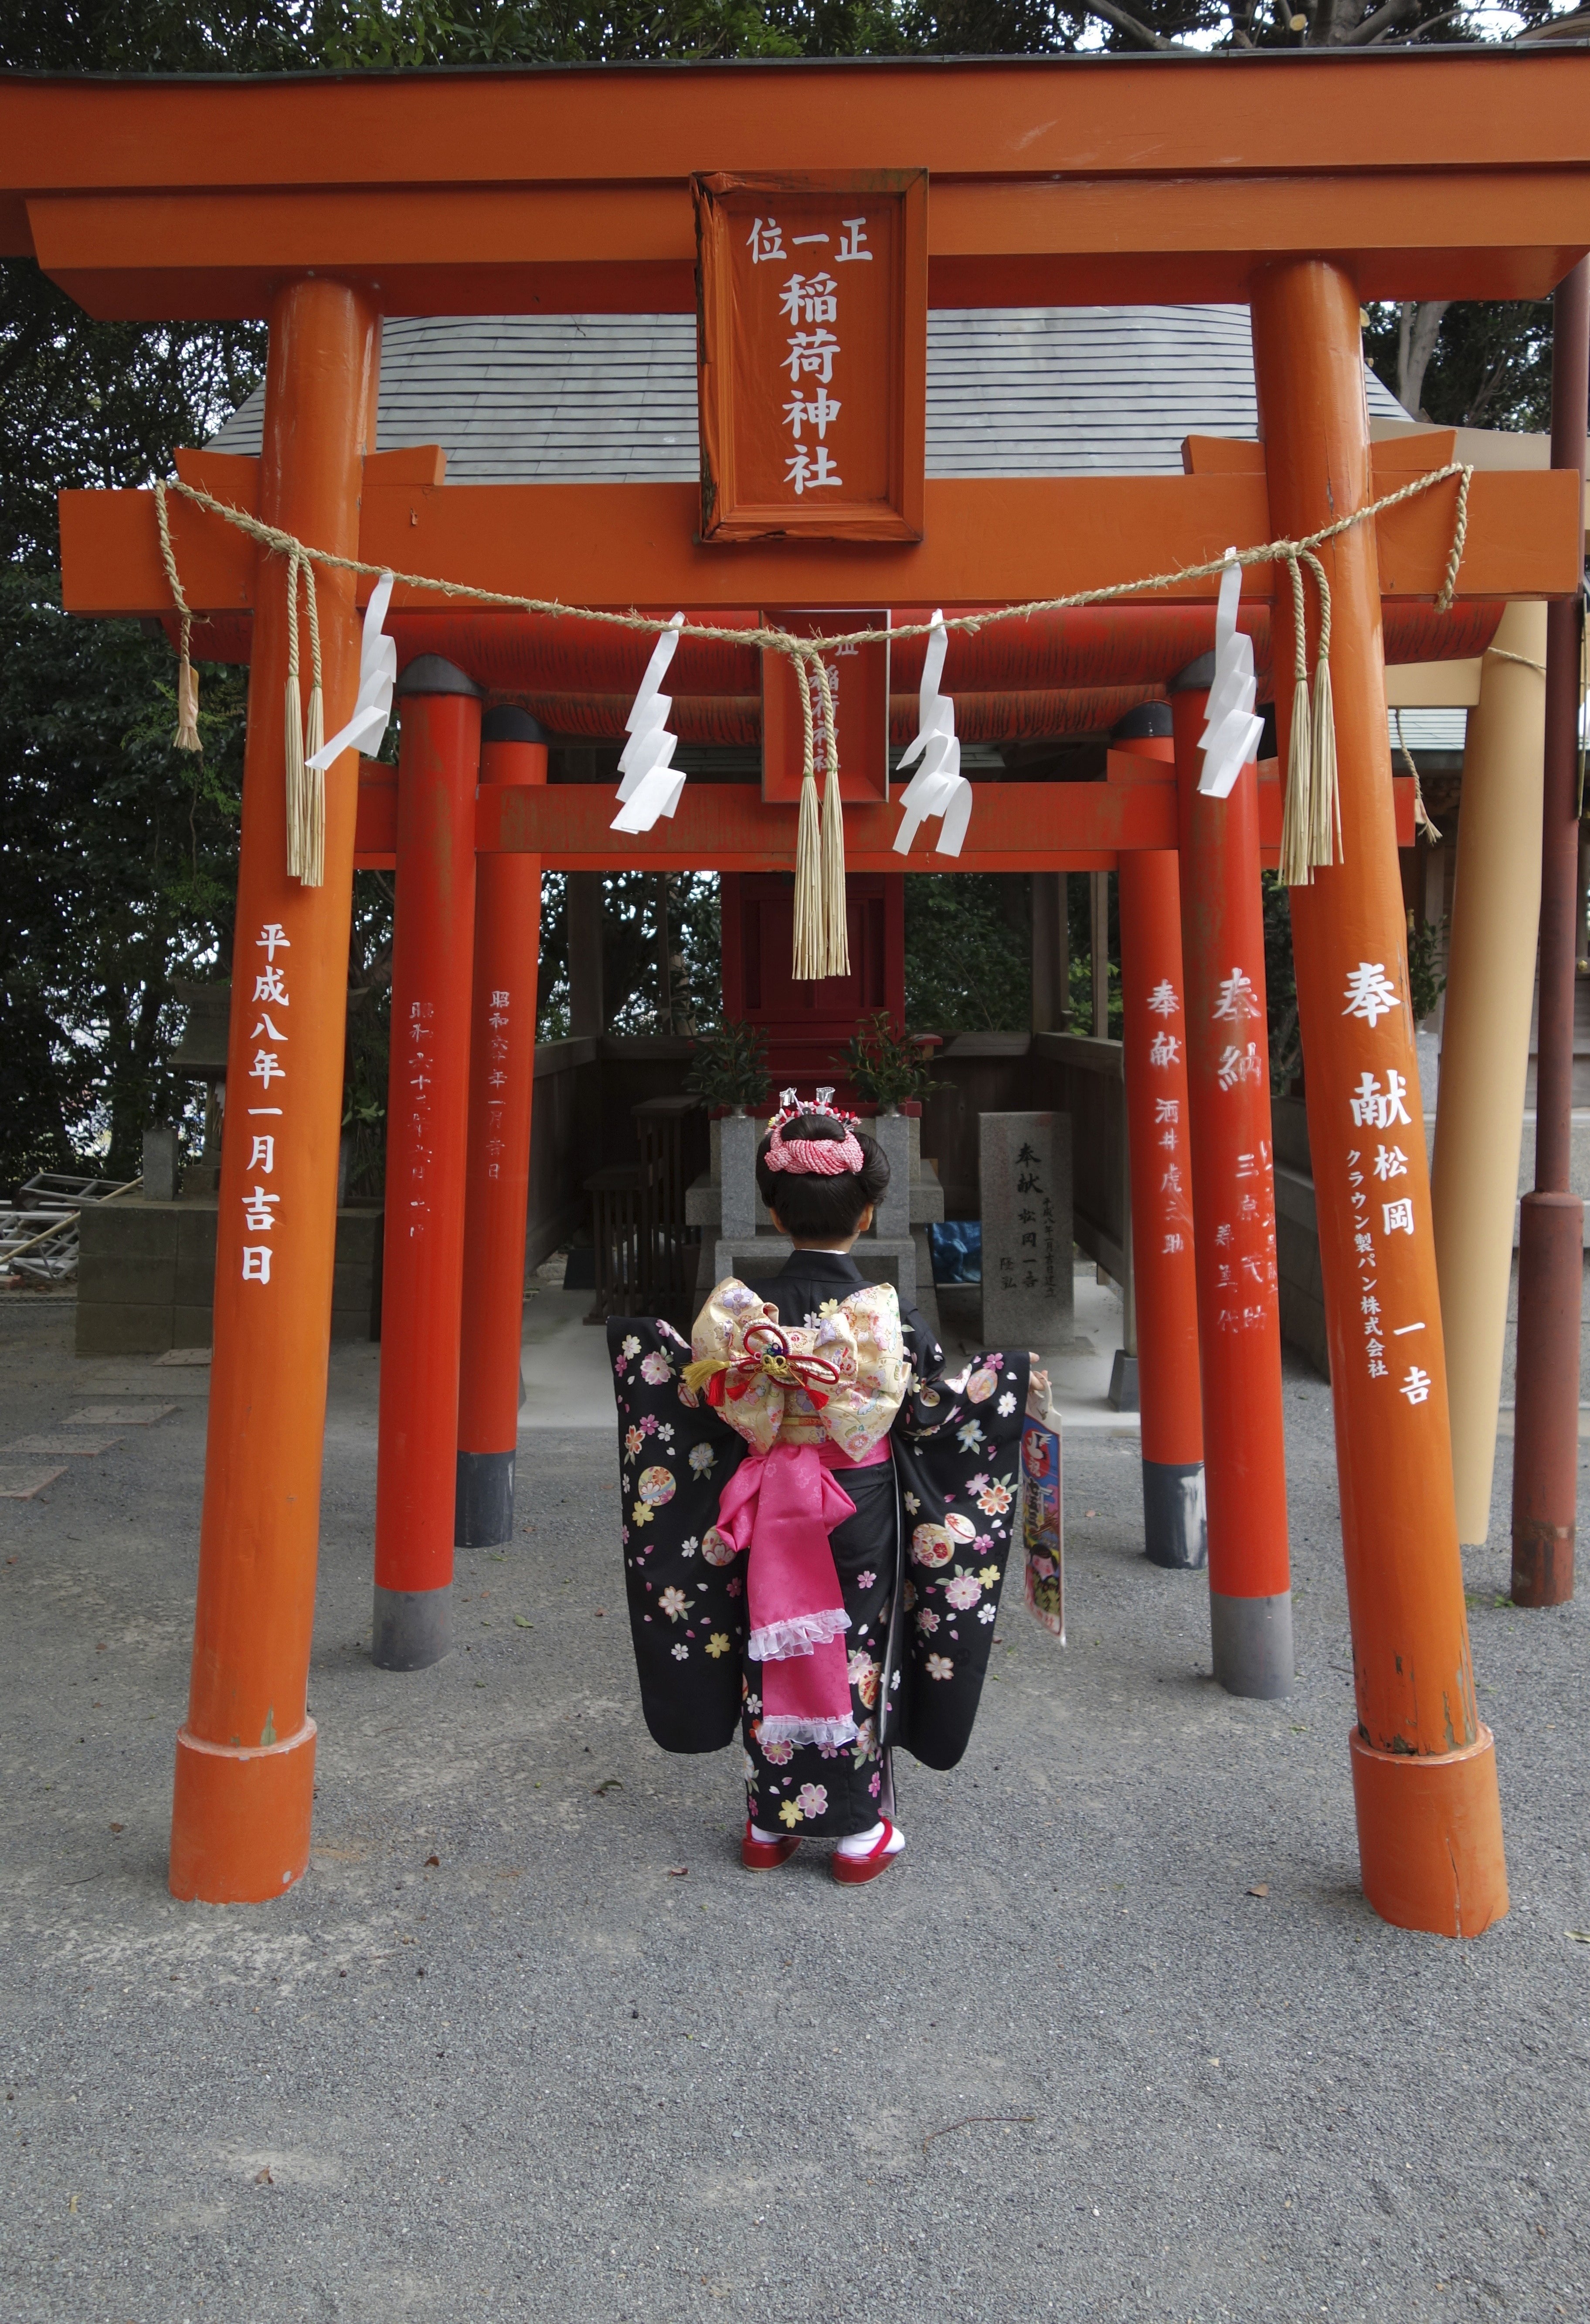 Japanese Child Wearing a Kimono